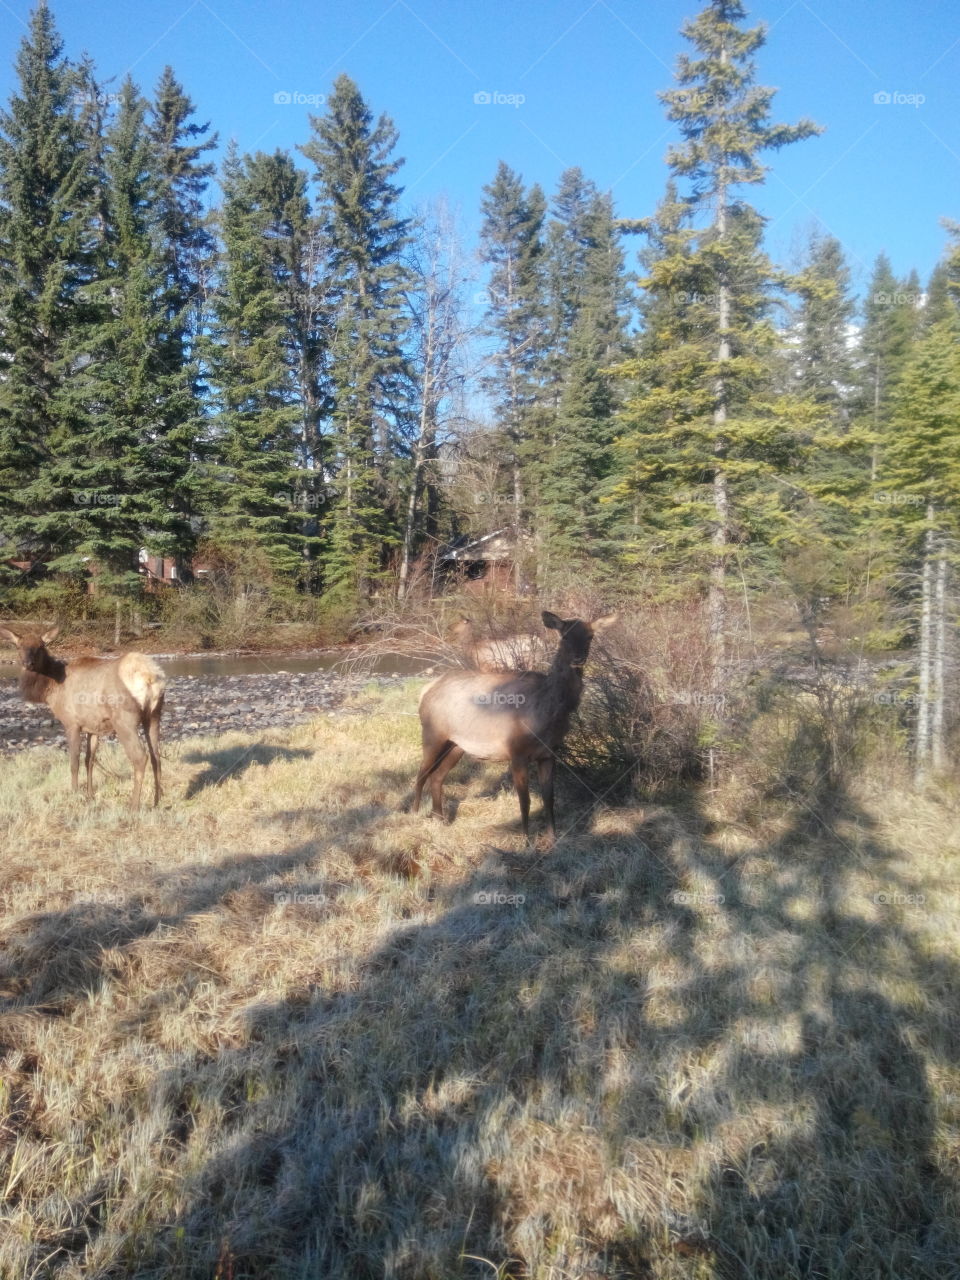 Elk by creek. Elk grazing